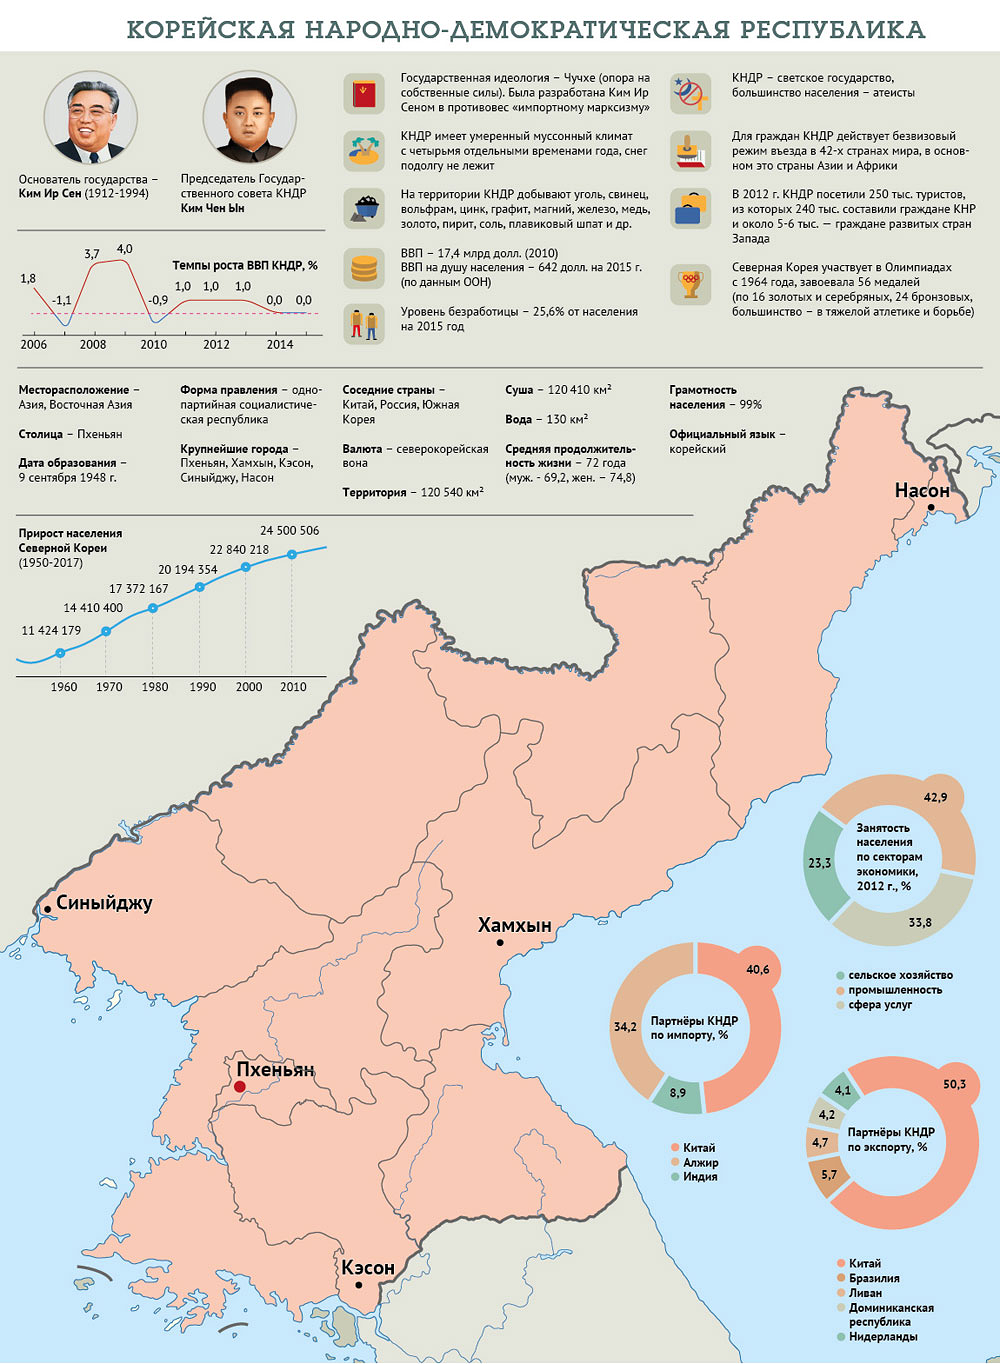 Кндр страна сосед россии. Территория КНДР на карте. Природные ресурсы КНДР карта. Карта промышленности Северной Кореи. Корейская народно-Демократическая Республика на карте.